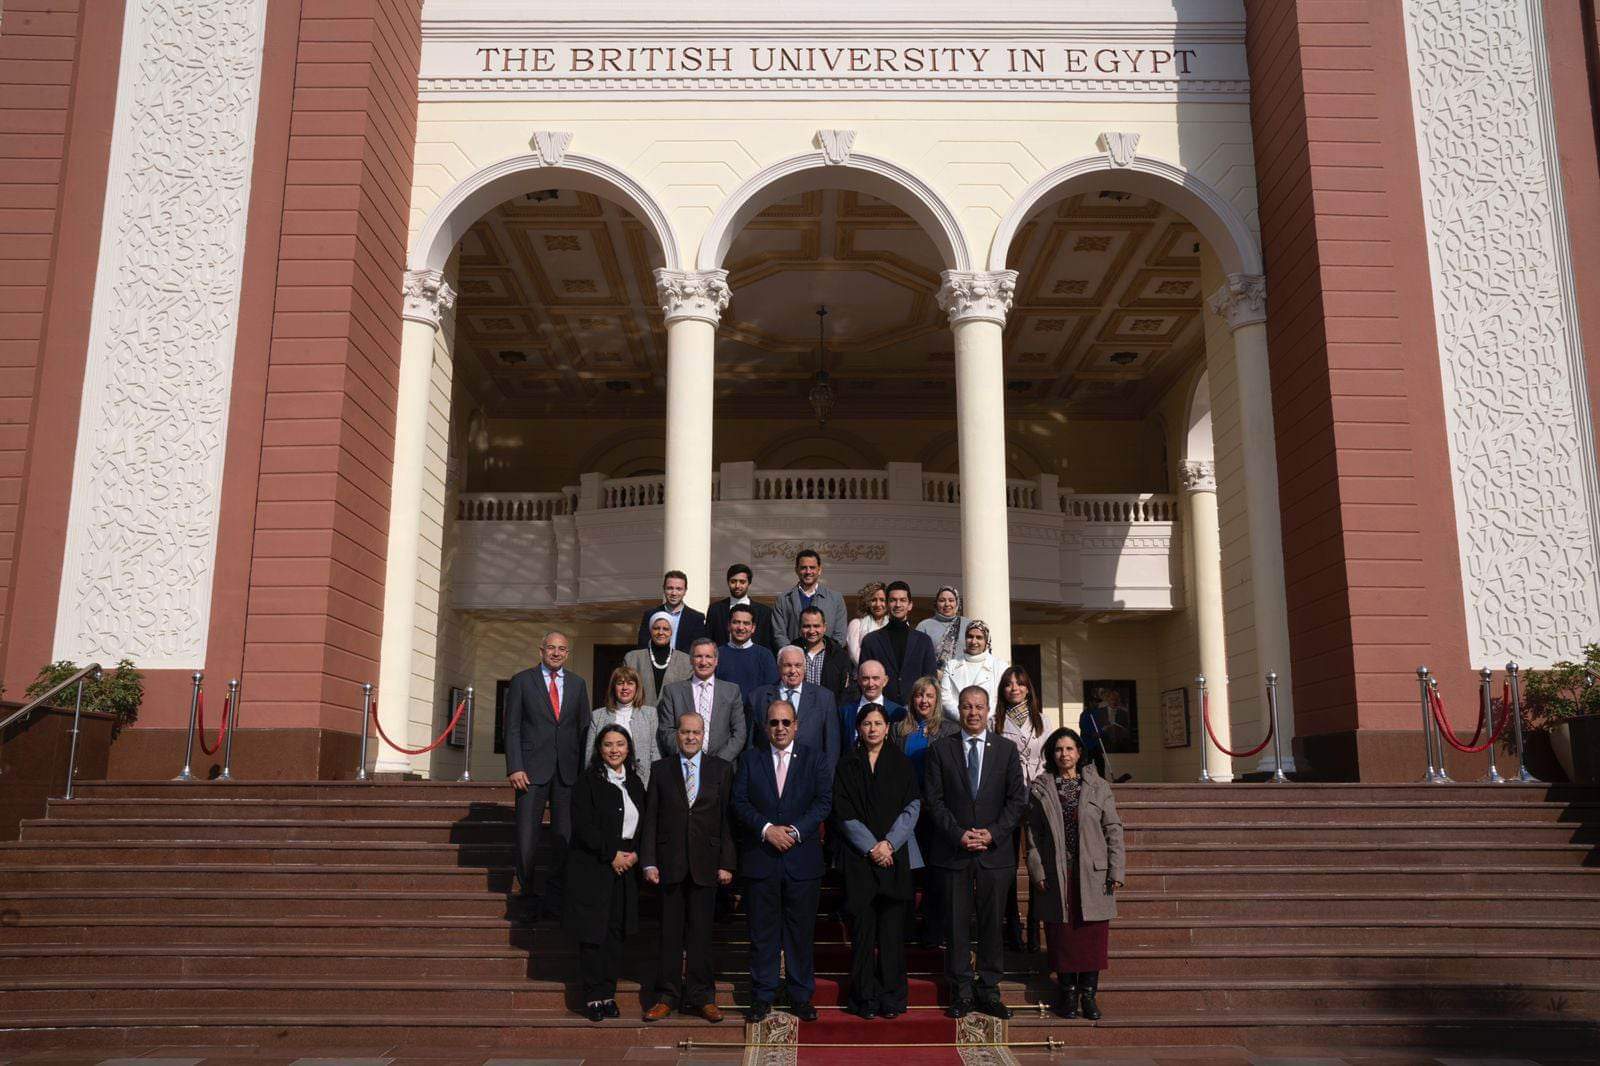 الجامعة البريطانية في مصر توقع بروتوكول تعاون مع نادي روتاري لخدمة المجتمع